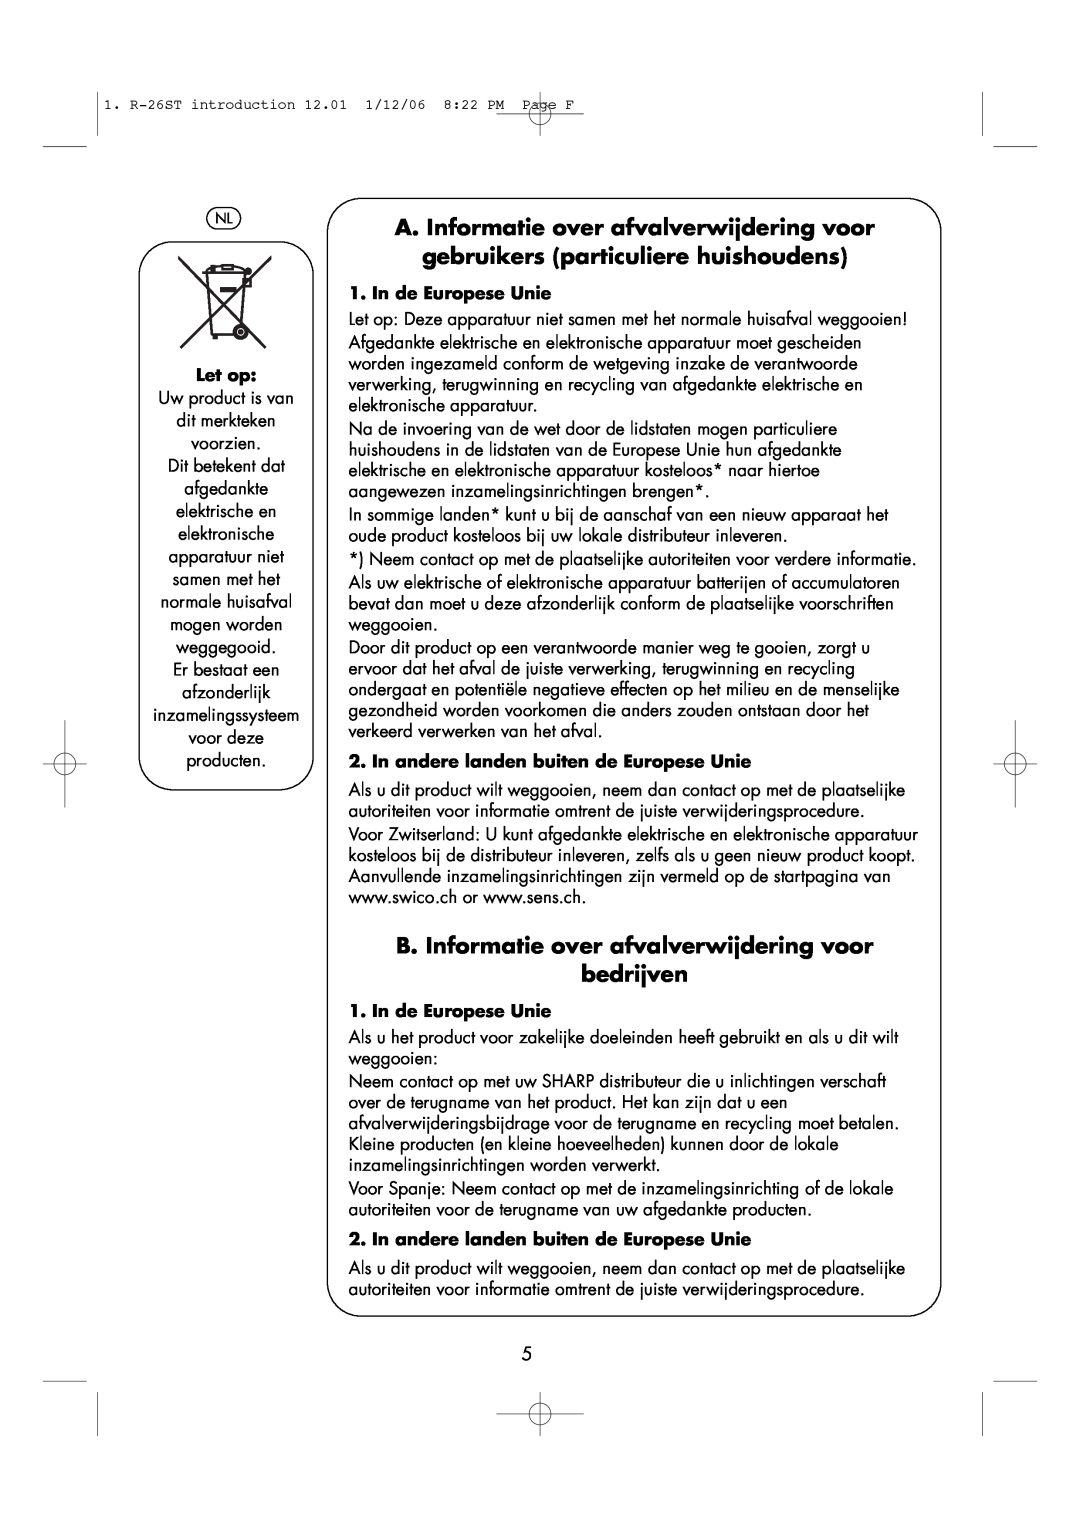 Sharp R-26ST A. Informatie over afvalverwijdering voor, gebruikers particuliere huishoudens, Let op, In de Europese Unie 